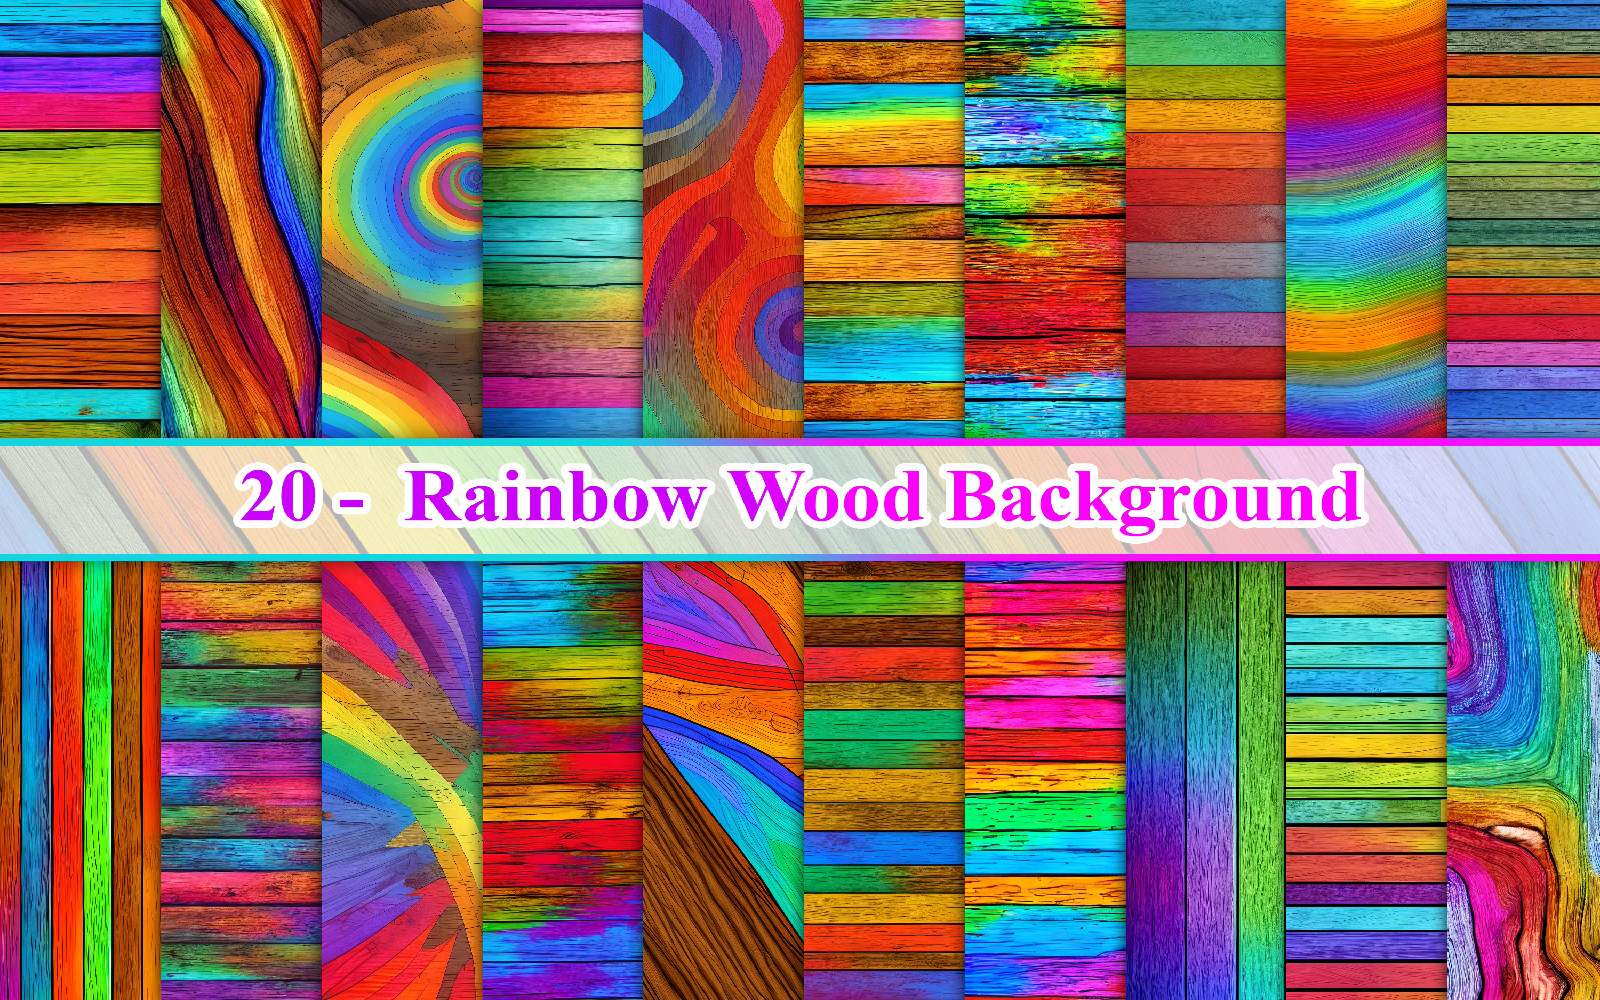 Rainbow Wood Background, Colorful Wood Background